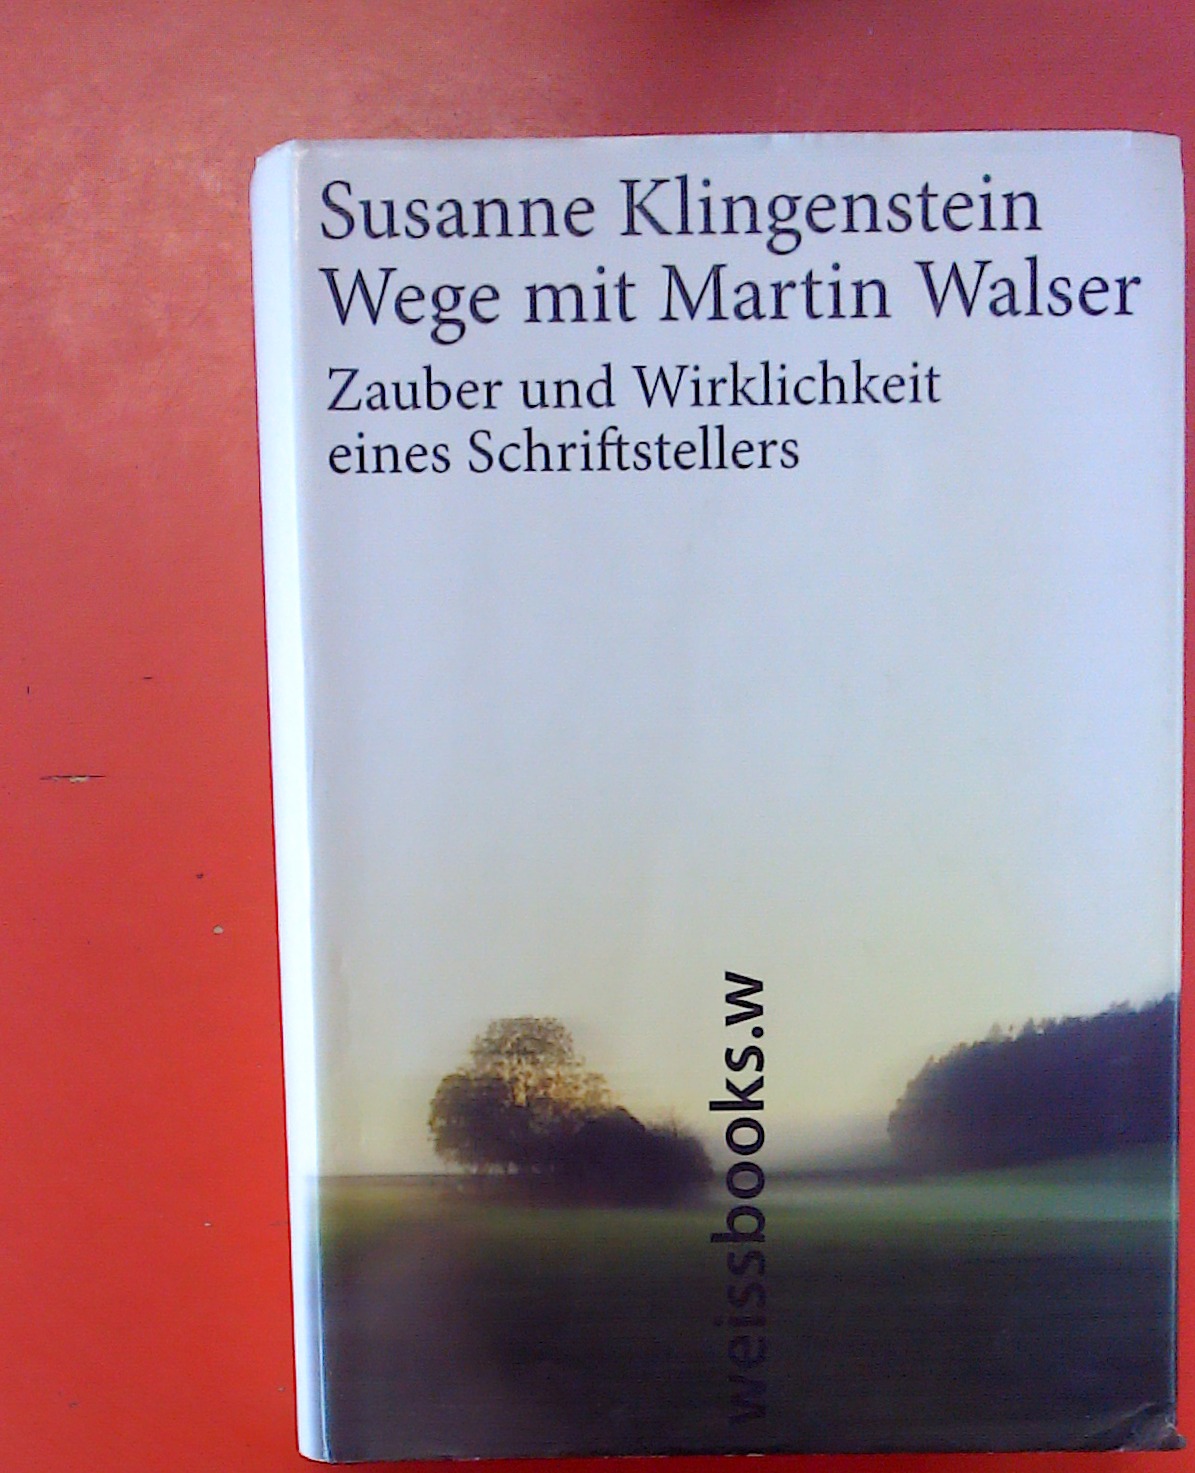 Wege mit Martin Walser - Zauber und Wirklichkeit eines Schriftstellers - Susanne Klingenstein